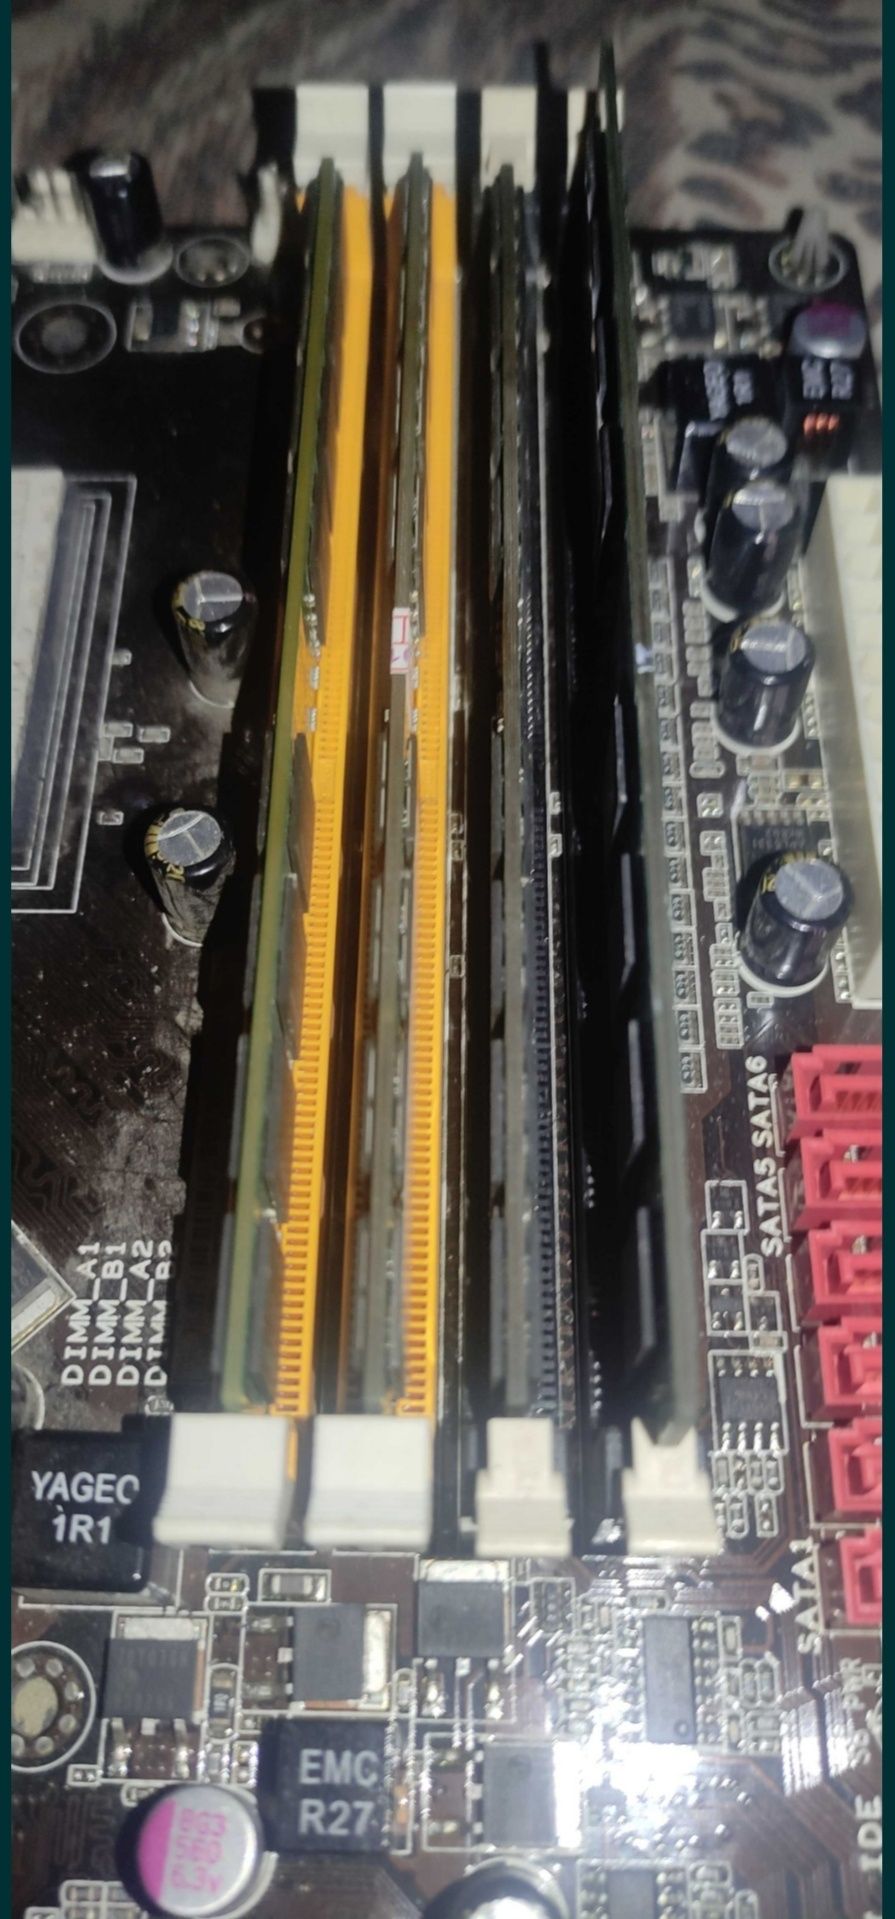 Оперативная память Kingston KVR800D2N6/2G (1 штука)
Kingston DDR2 2GB